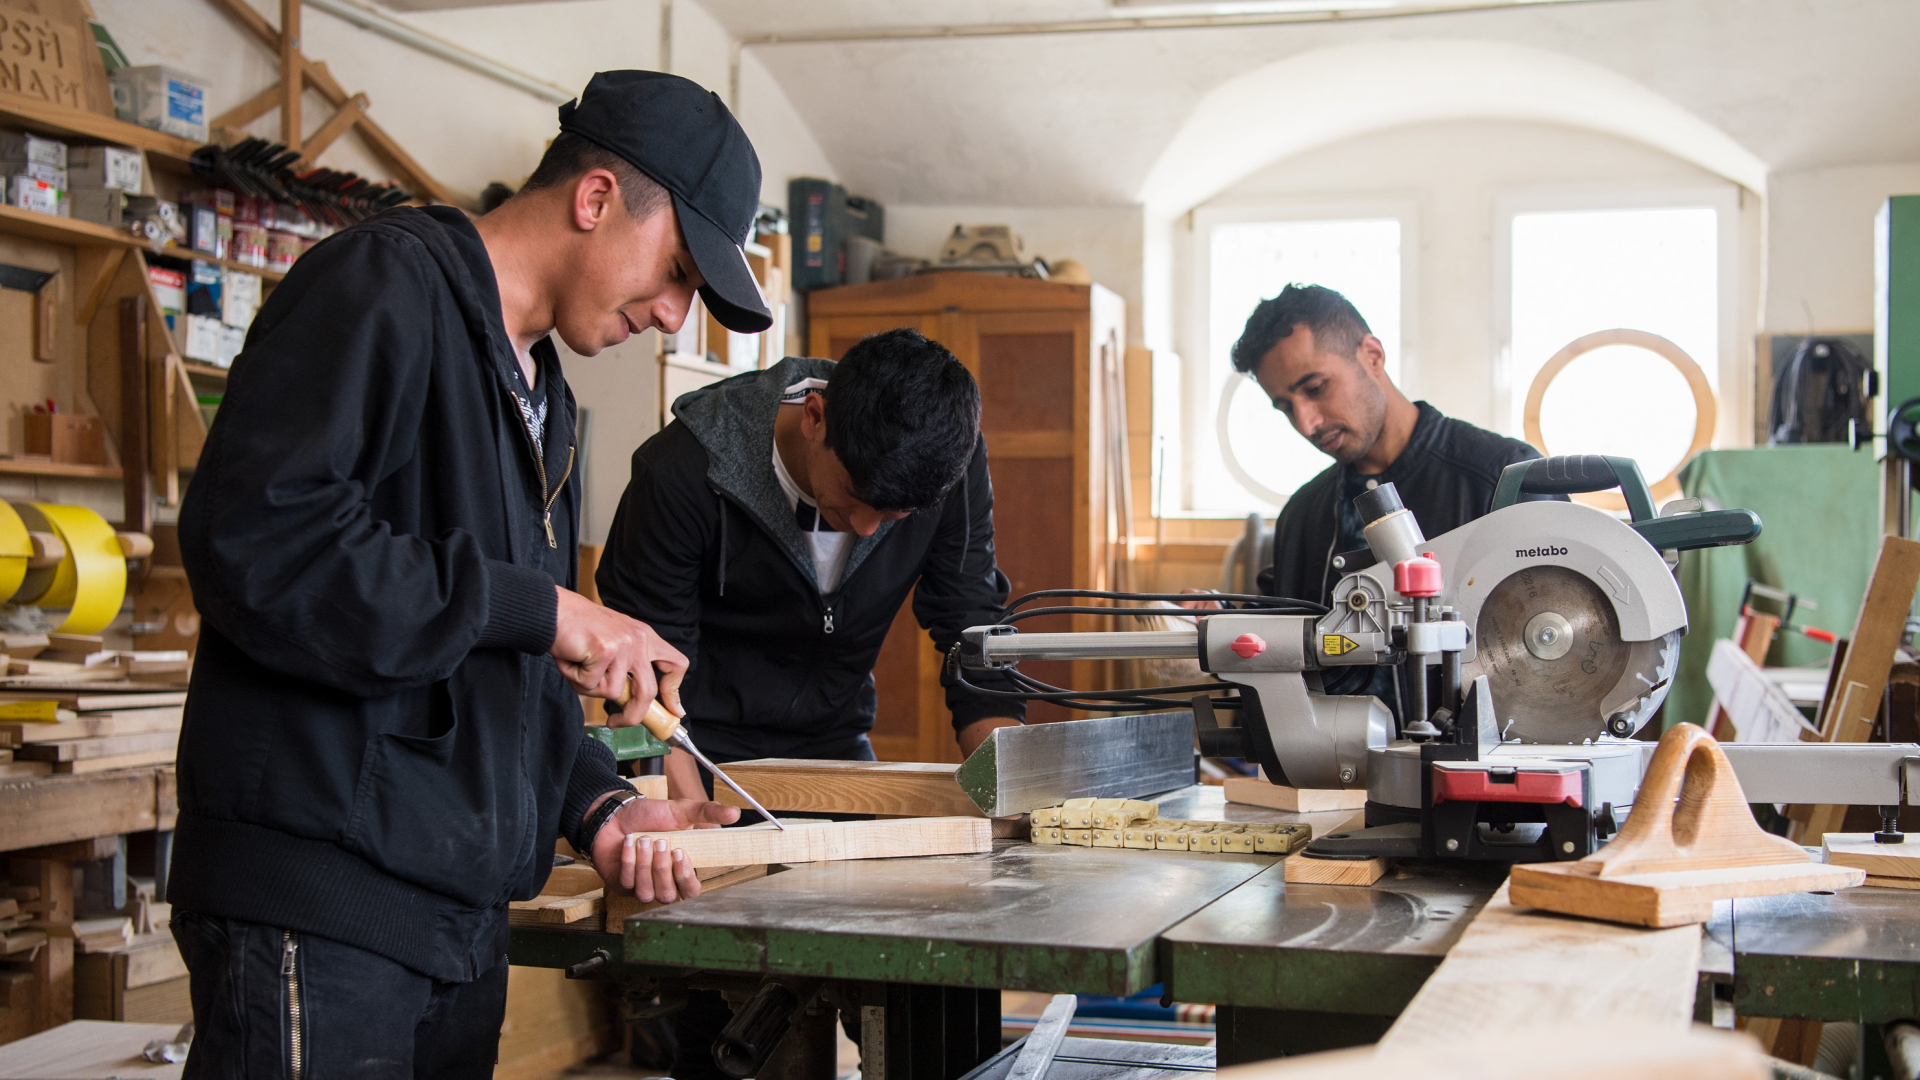 Drei junge Geflüchtete arbeiten in einer Holzwerkstatt in der Moritzburger Produktionsschule in Sachsen. (Archivbild vom 17.04.2018) | dpa